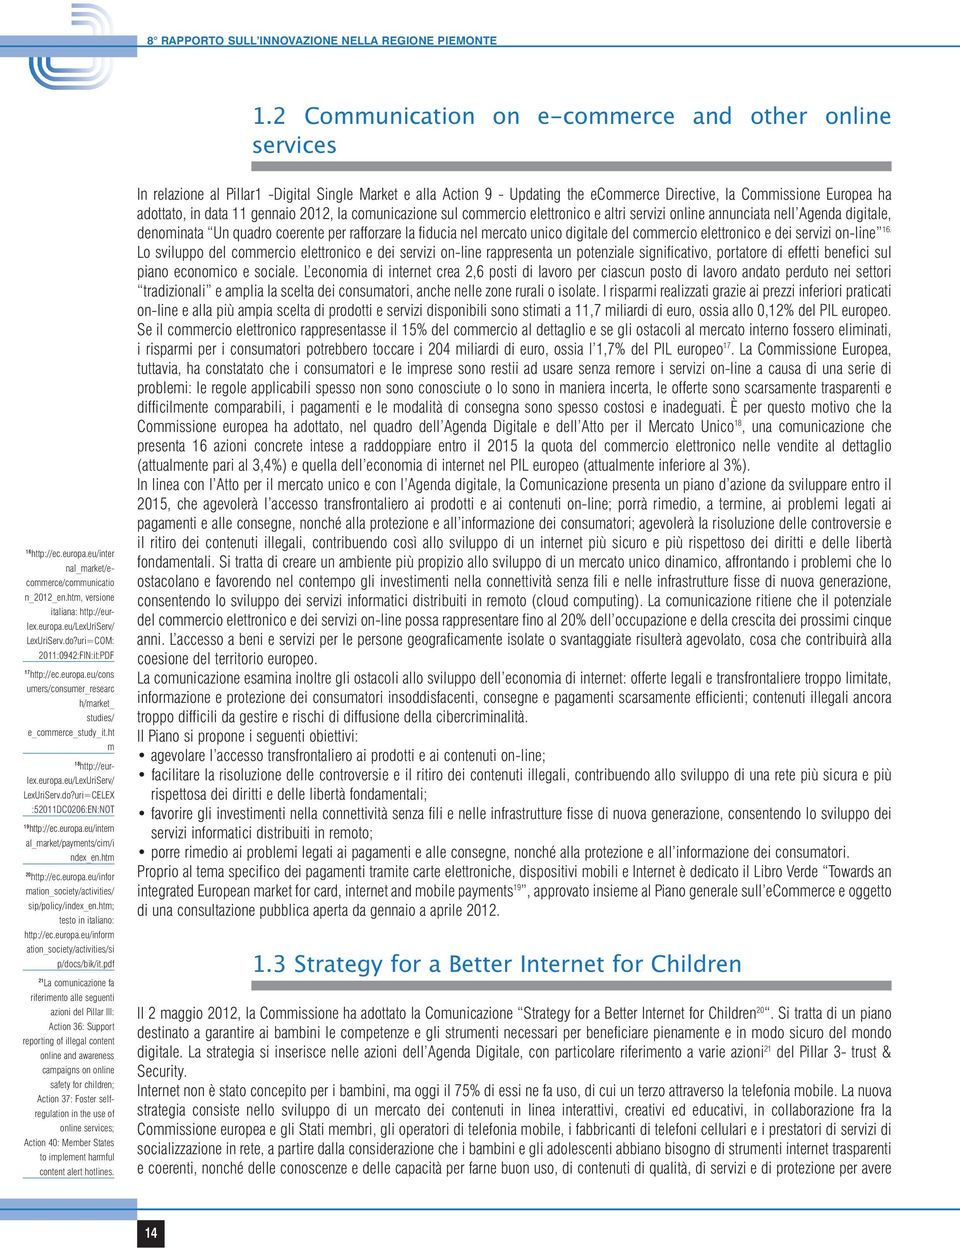 ht m 18 http://eurlex.europa.eu/lexuriserv/ LexUriServ.do?uri=CELEX :52011DC0206:EN:NOT 19 http://ec.europa.eu/intern al_market/payments/cim/i ndex_en.htm 20 http://ec.europa.eu/infor mation_society/activities/ sip/policy/index_en.